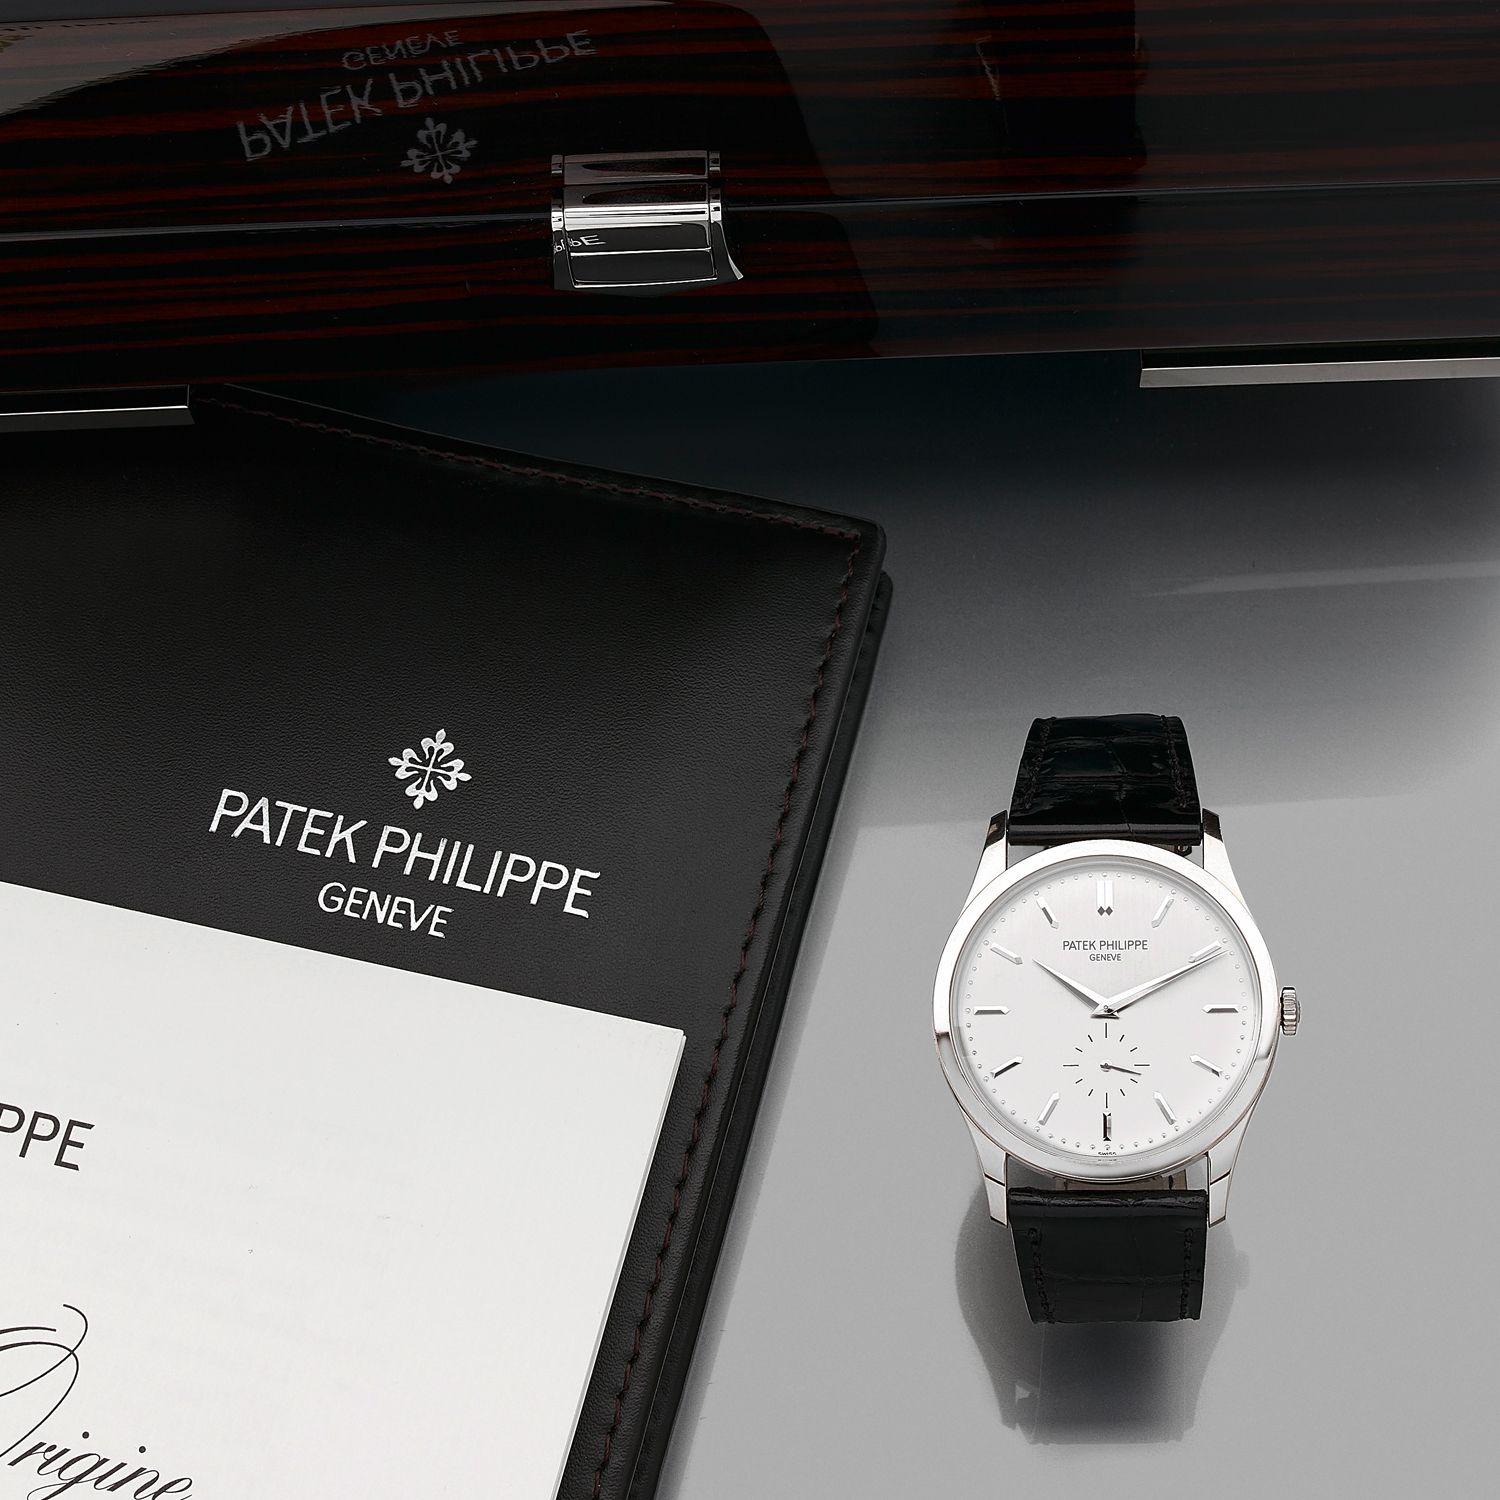 Null patek philippe
calatrava.REF. 5196G
于2017年11月售出。
18K白金手镯式皮革腕表。
表壳：圆形，背夹。
表盘&hellip;